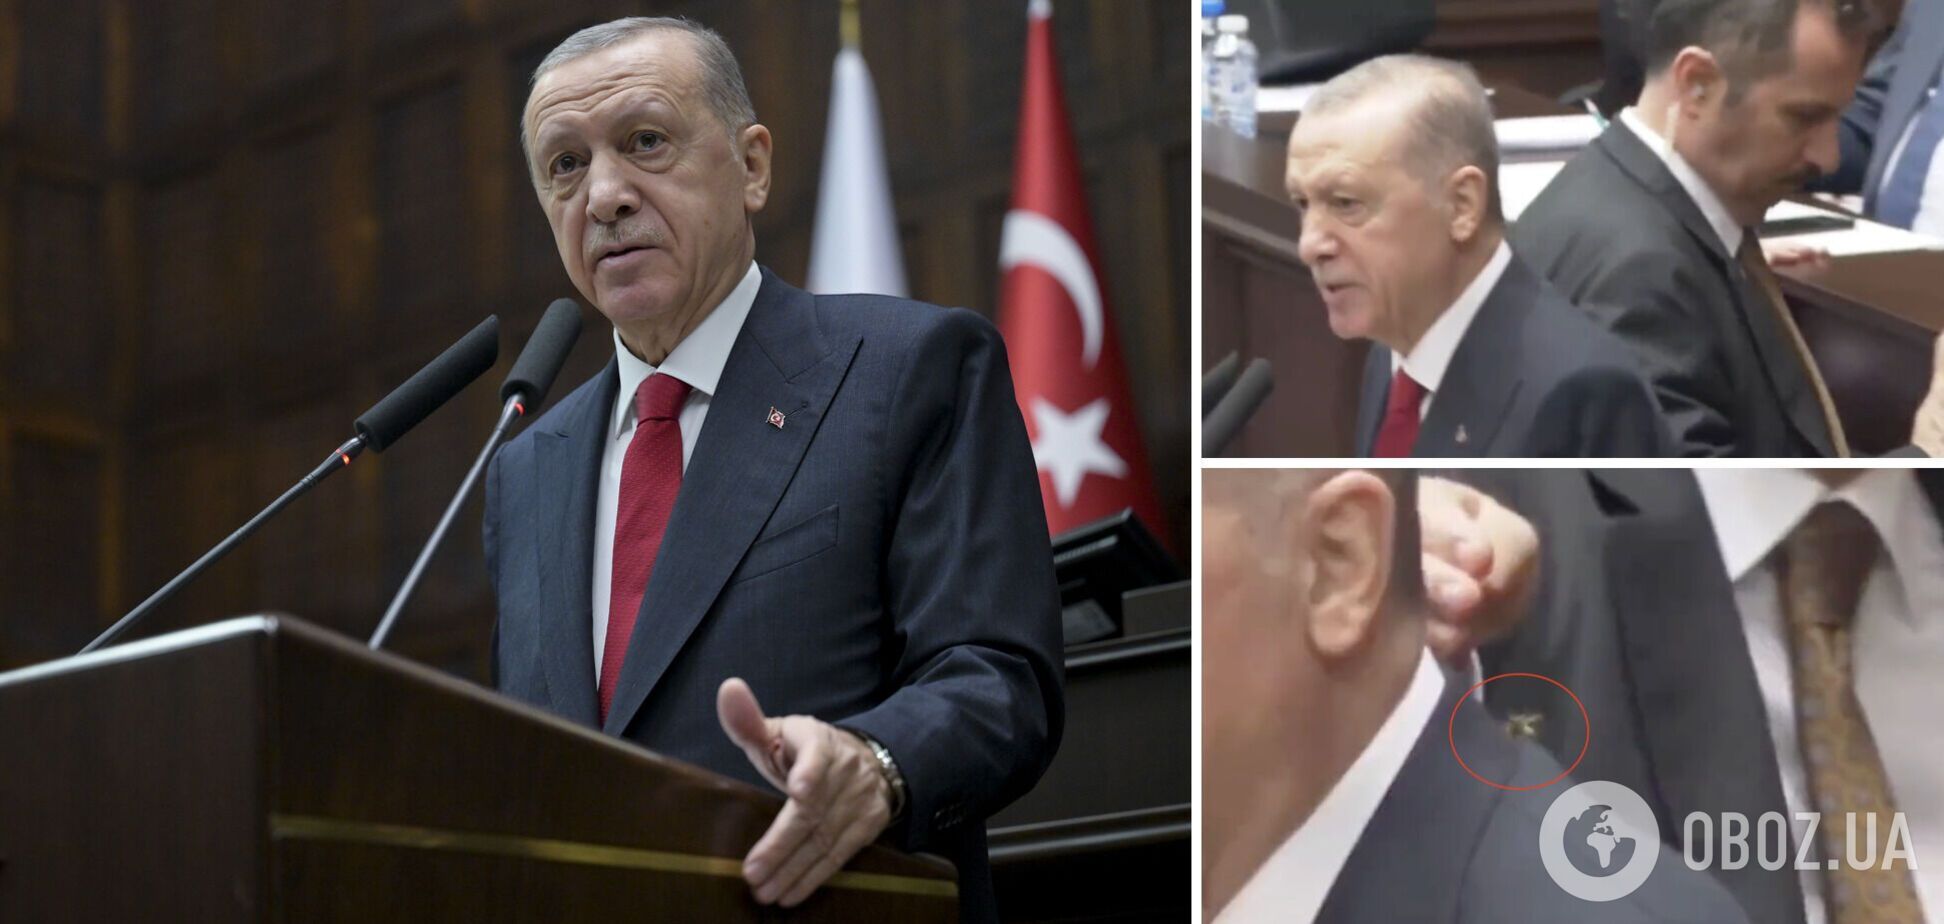 Охоронець Ердогана професійно ліквідував осу, яка сіла на плече президента. Відео курйозу